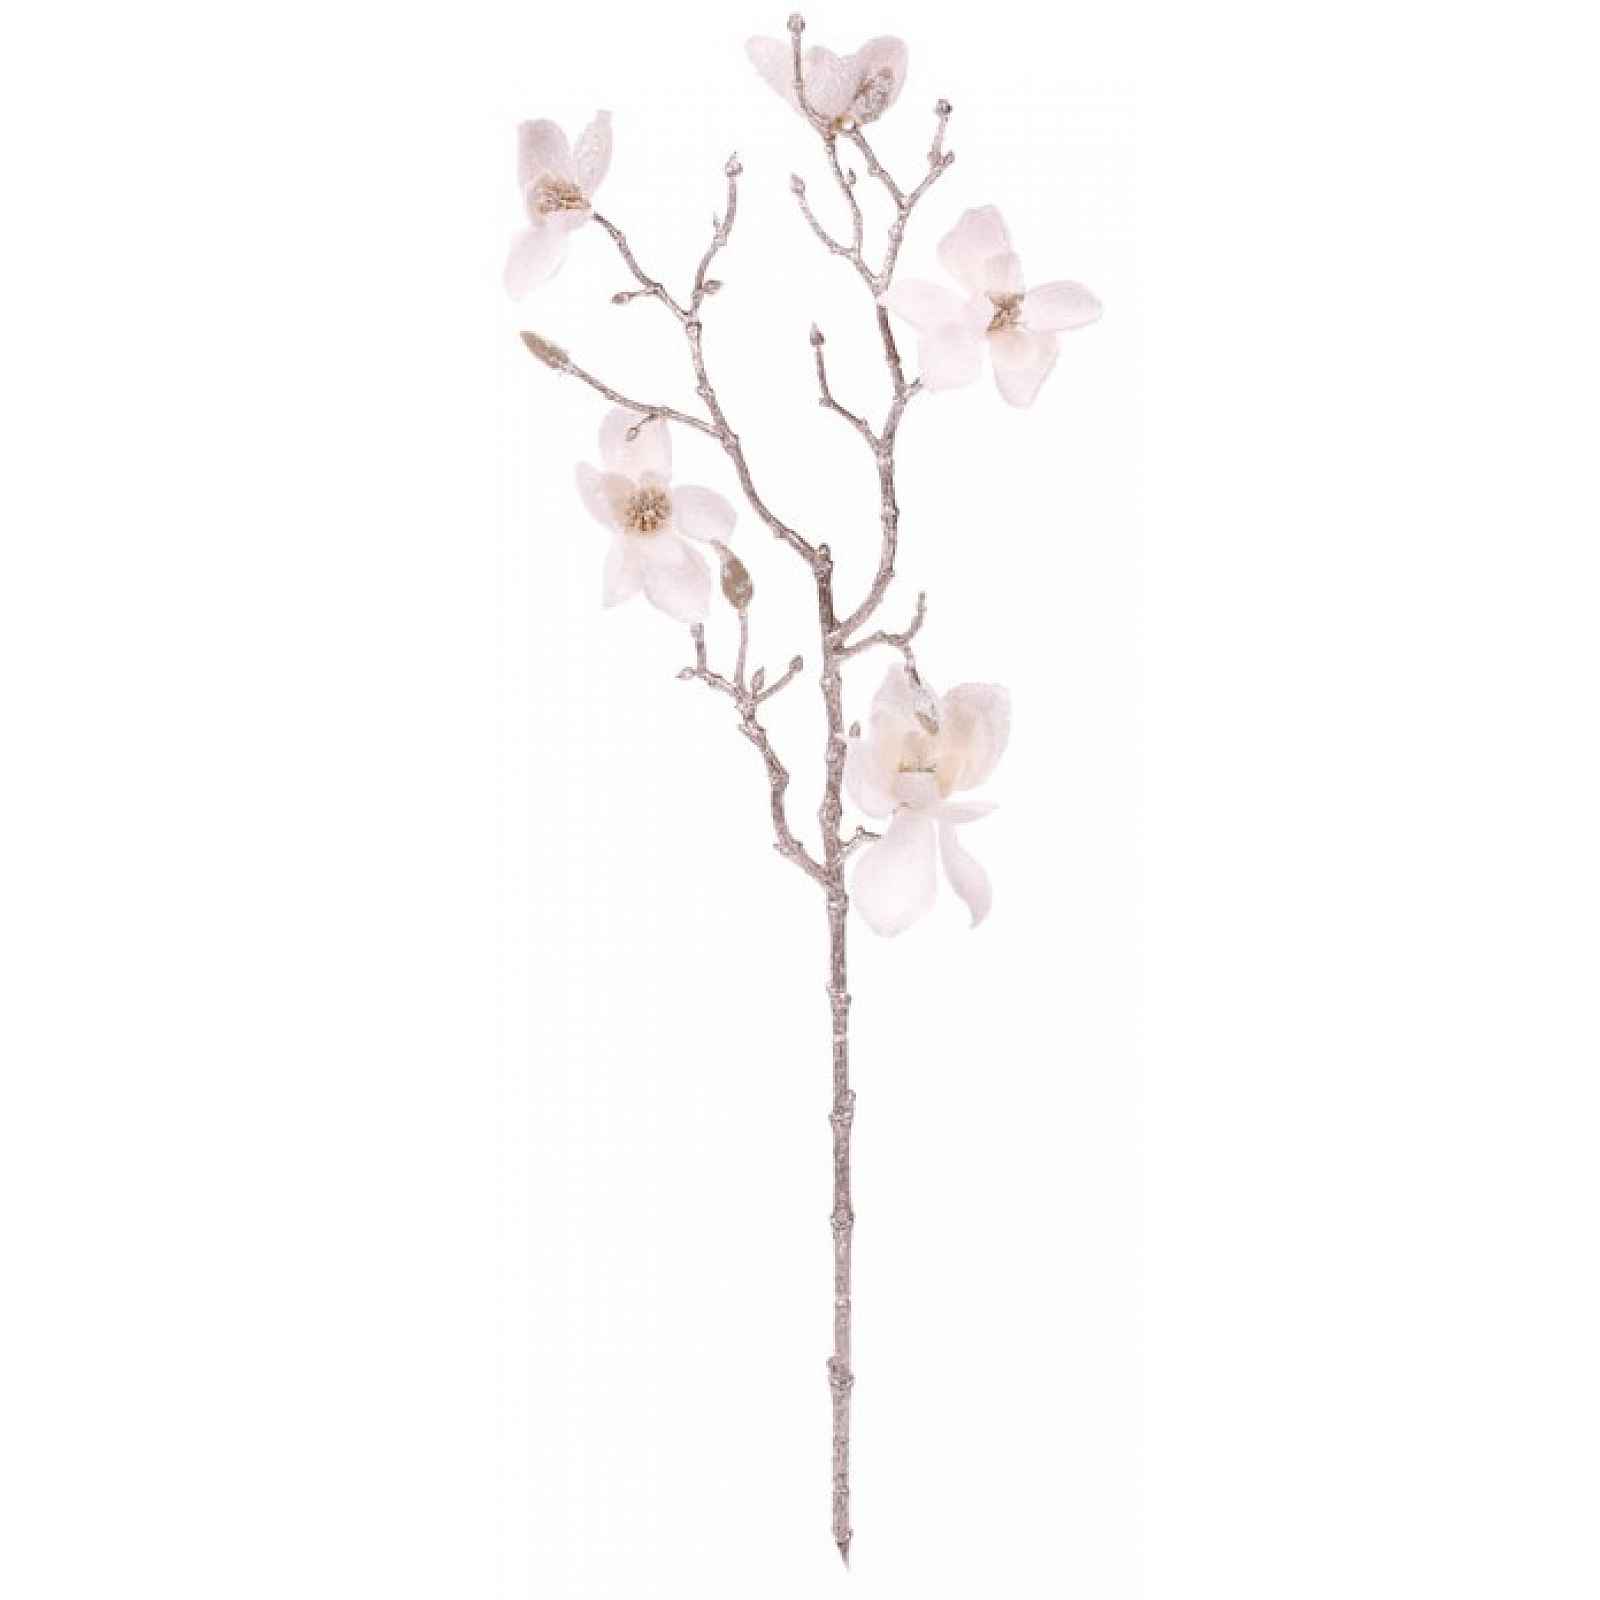 Umělá květina Zasněžená magnolie 65 cm, bílá